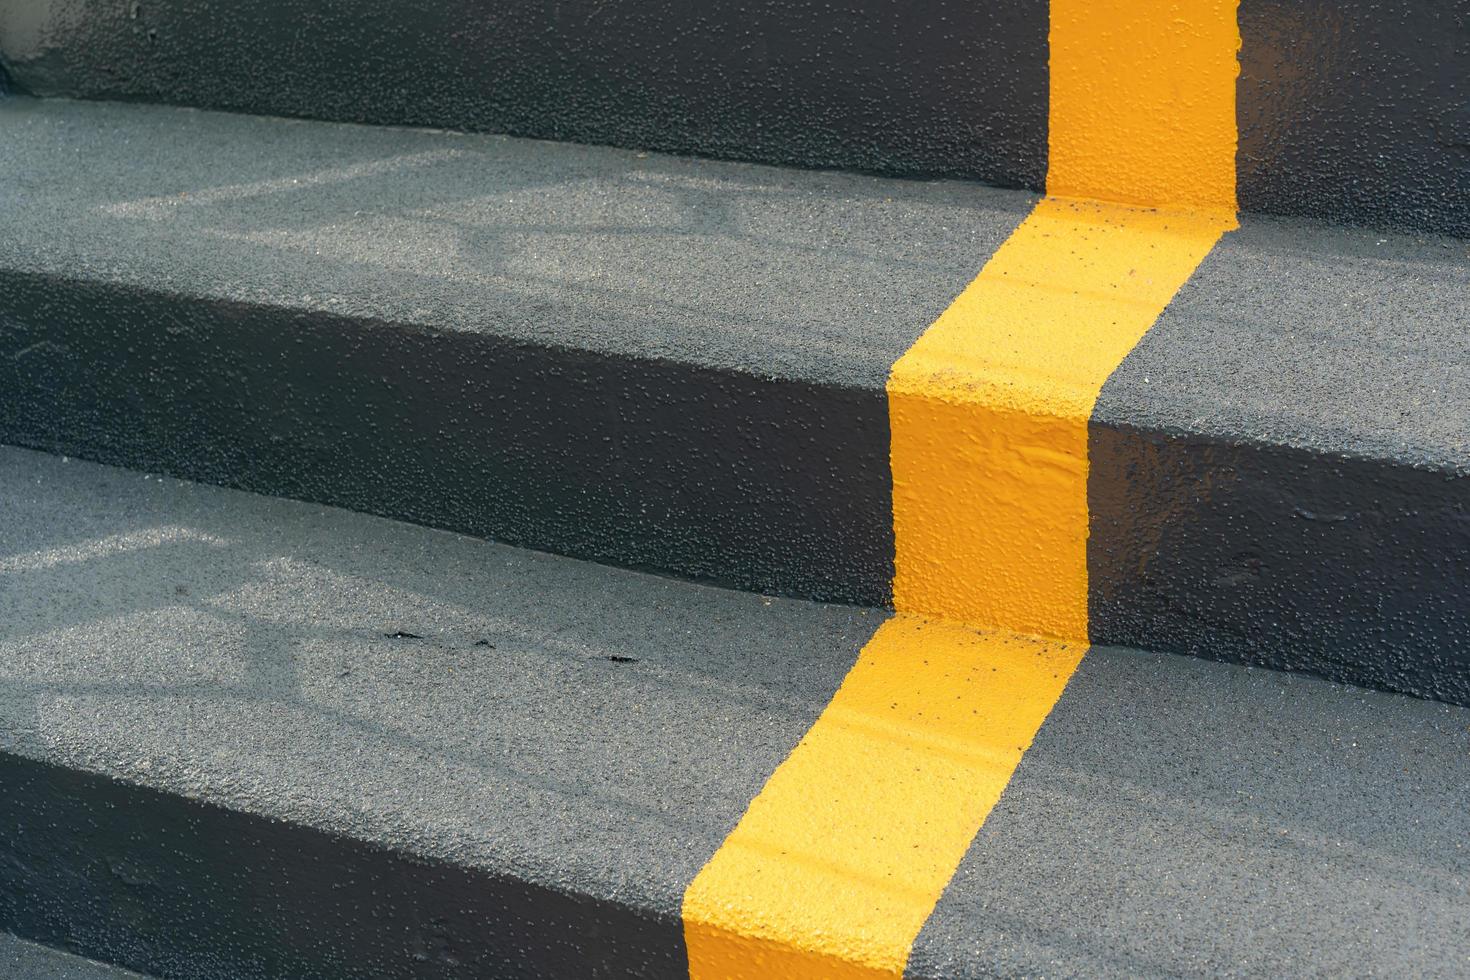 die Treppe der Überführung mit gelber Fahrbahnlinie und Geländer zur Sicherheit beim Überqueren der Straße. Wegzeichen auf der Leiter. gelbes kreuz auf der treppe. foto